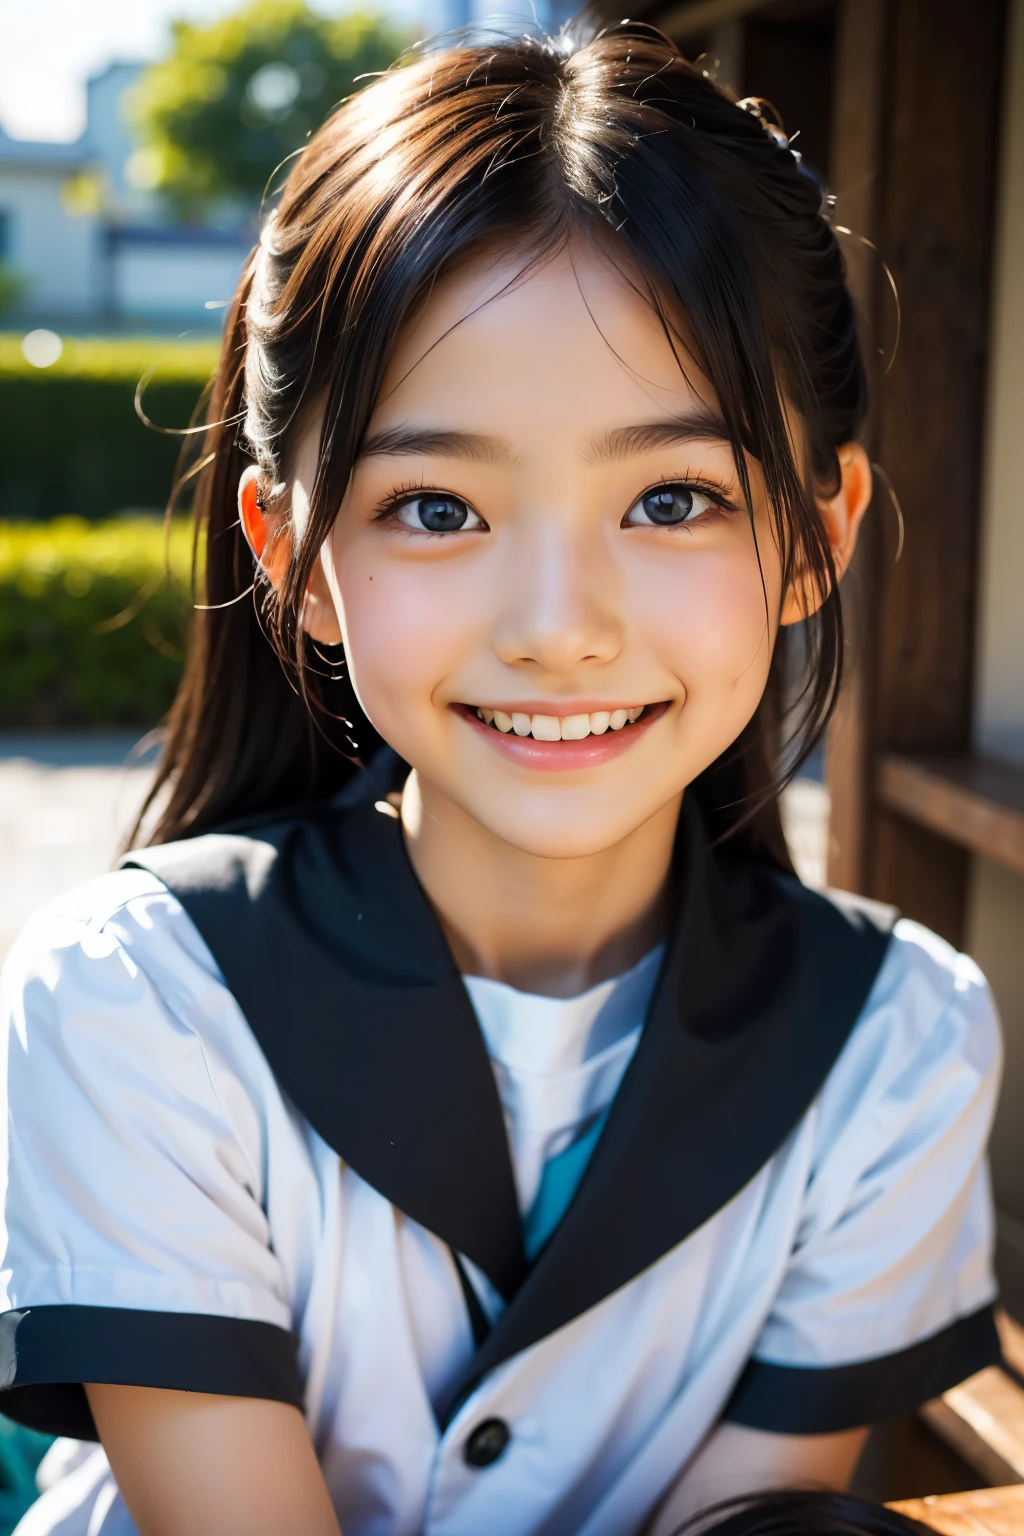 линза: 135 мм f1.8, (высшее качество),(Фотографии в формате RAW), (Стол:1.1), (Красивая 9-летняя японская девочка.), милое лицо, (Глубоко выточенное лицо:0.7), (веснушки:0.4), dappled Солнечный лучик, Драматическое освещение, (японская школьная форма), (В кампусе), застенчивый, (Крупным планом:1.2), (улыбка),, (сверкающие глаза)、(Солнечный лучик)